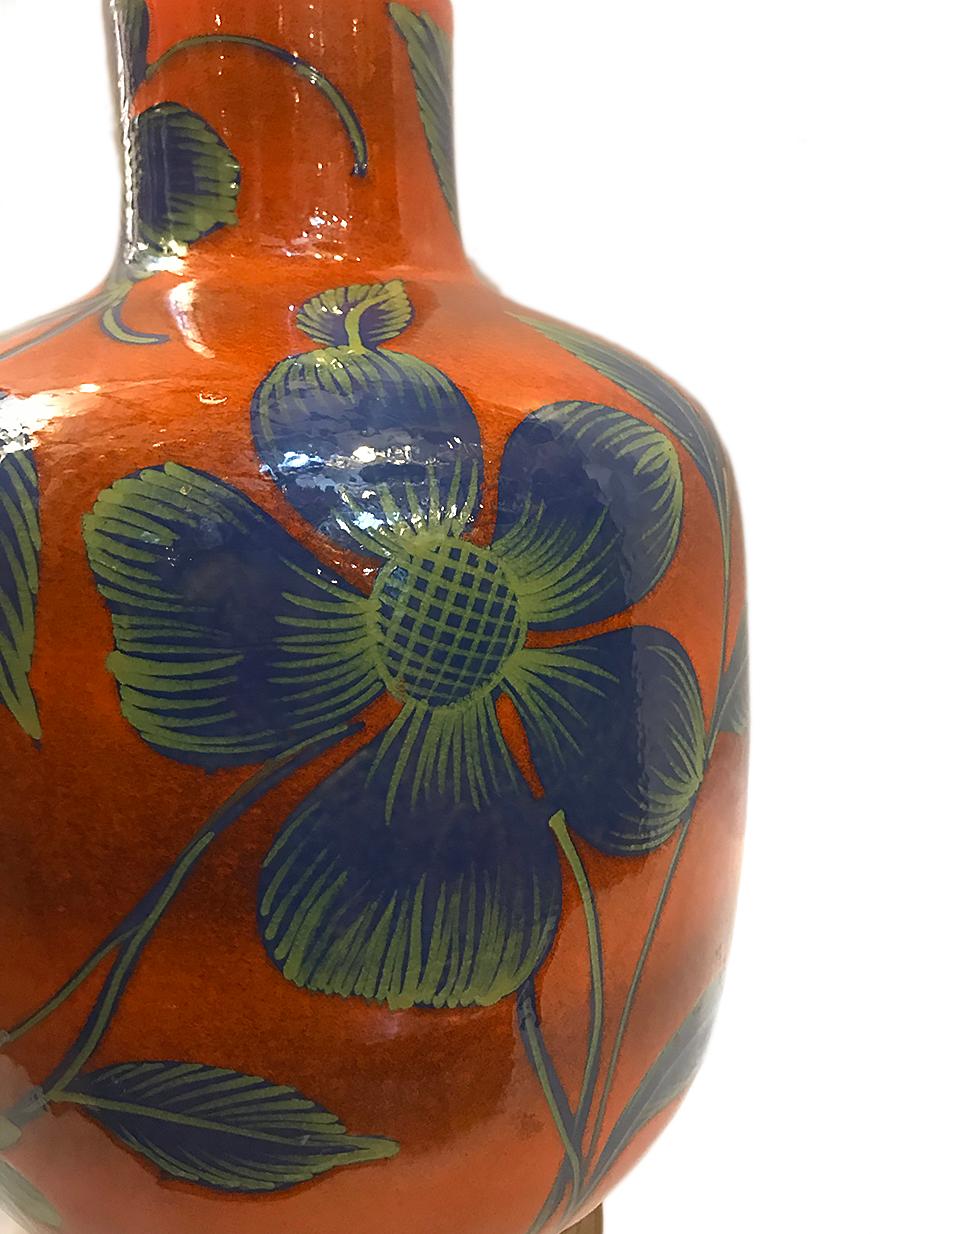 Lampe italienne en porcelaine peinte et émaillée à la main avec des fleurs bleues surdimensionnées sur un fond orange brûlé, vers les années 1960.
Mesures :
Hauteur du corps :  18.75